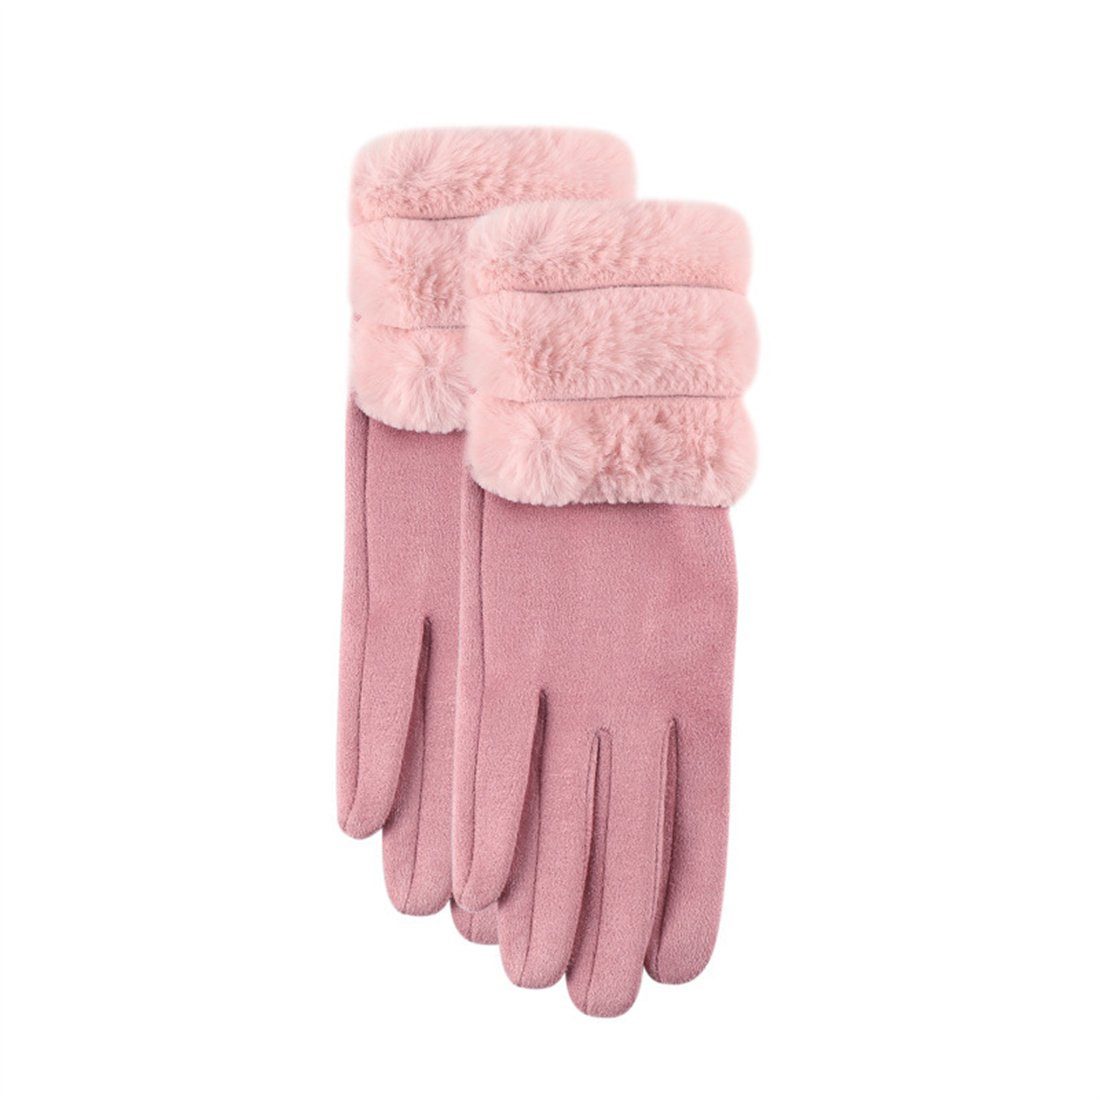 Rosa Plüsch Verdickter Reiten Warme Handschuhe, Damenmode Handschuhe Fleecehandschuhe DÖRÖY